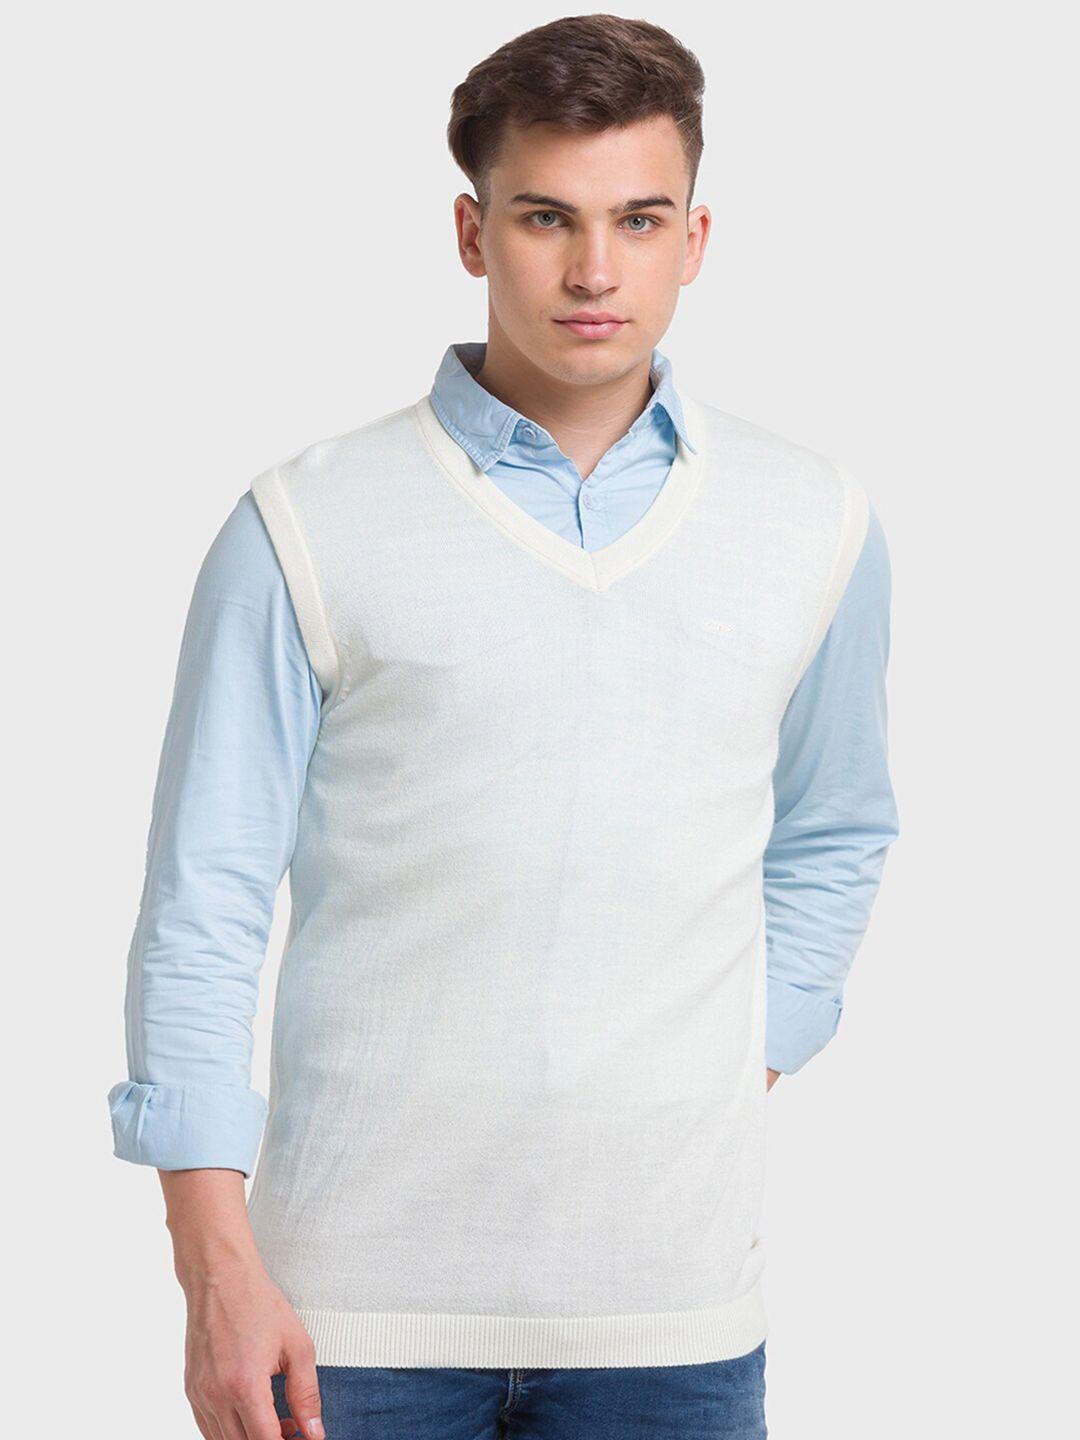 colorplus woollen sweater vest